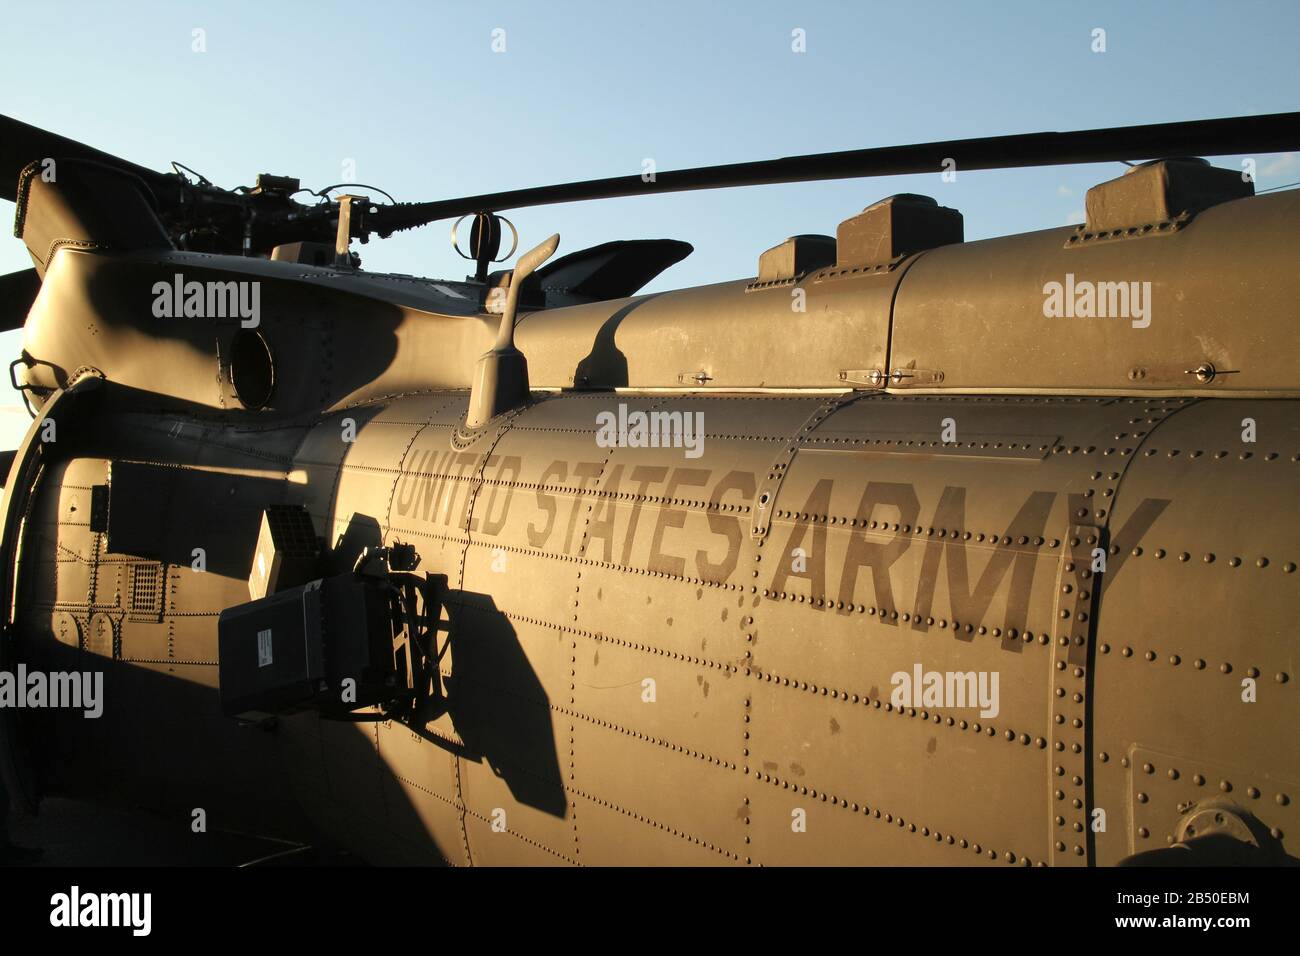 Aufschrift "united States Army" auf der Seite des Rumpfes eines Militärhubschraubers bei Sonnenuntergang Stockfoto